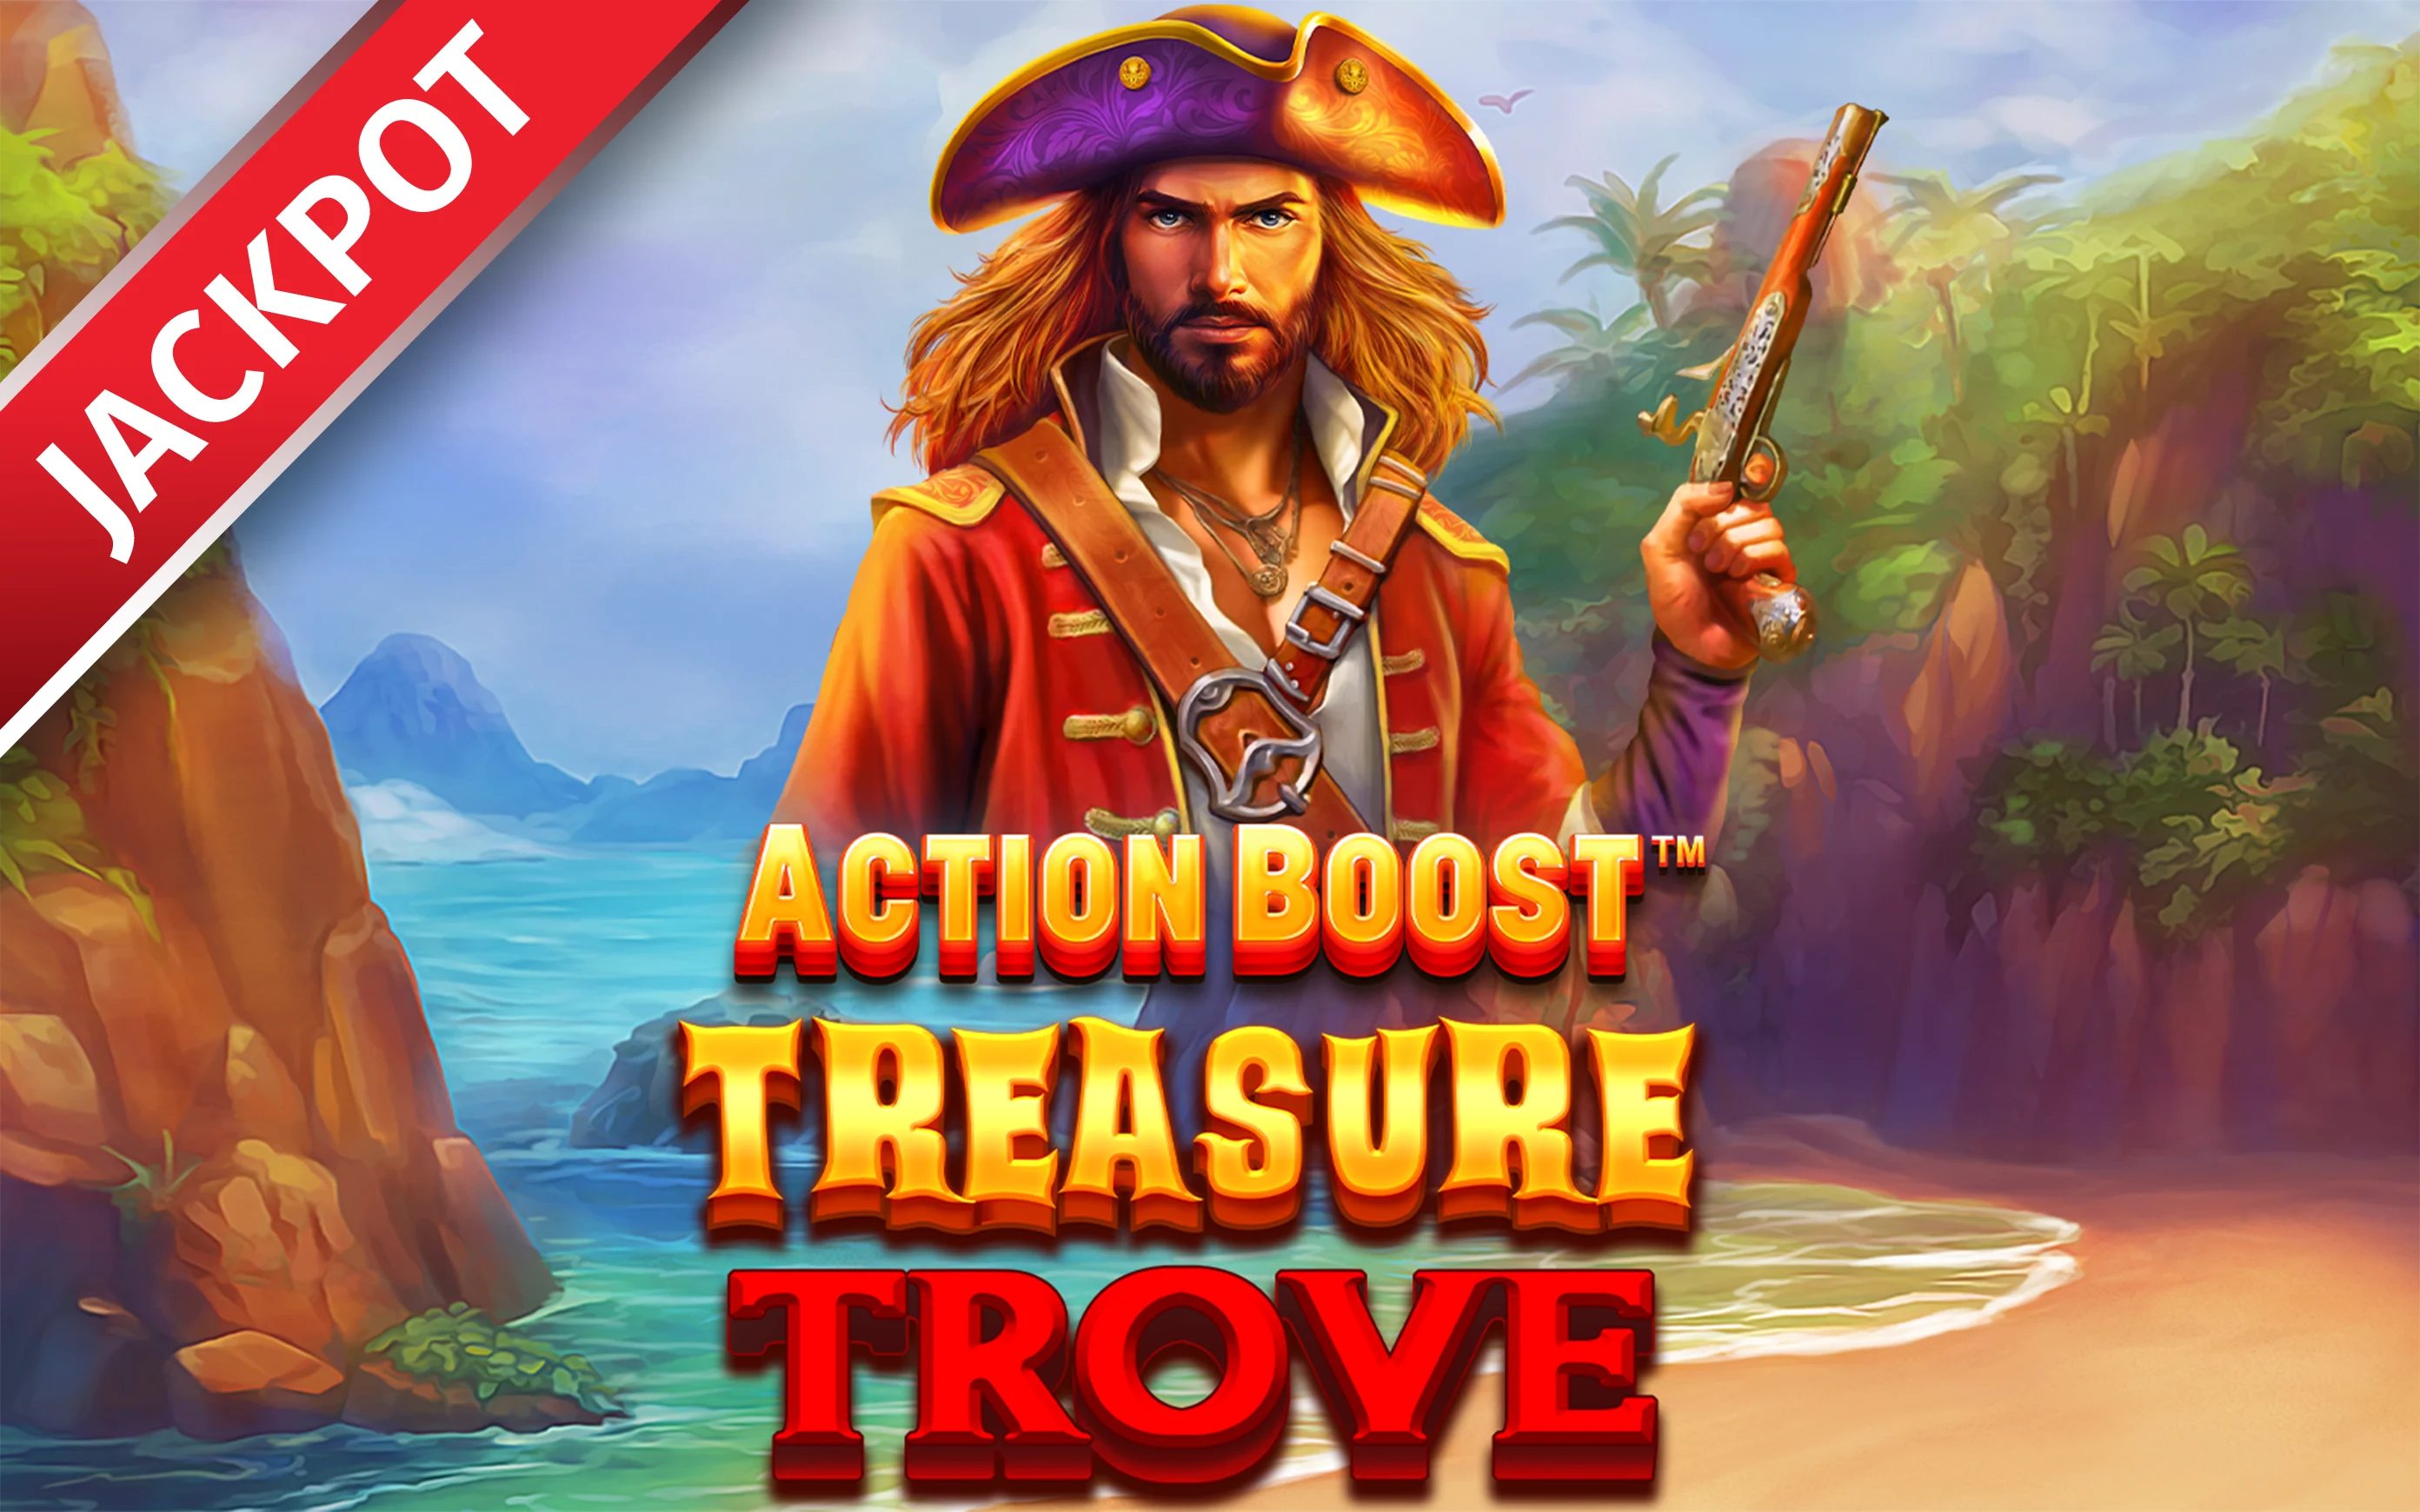 Juega a Action Boost™ Treasure Trove™ en el casino en línea de Starcasino.be